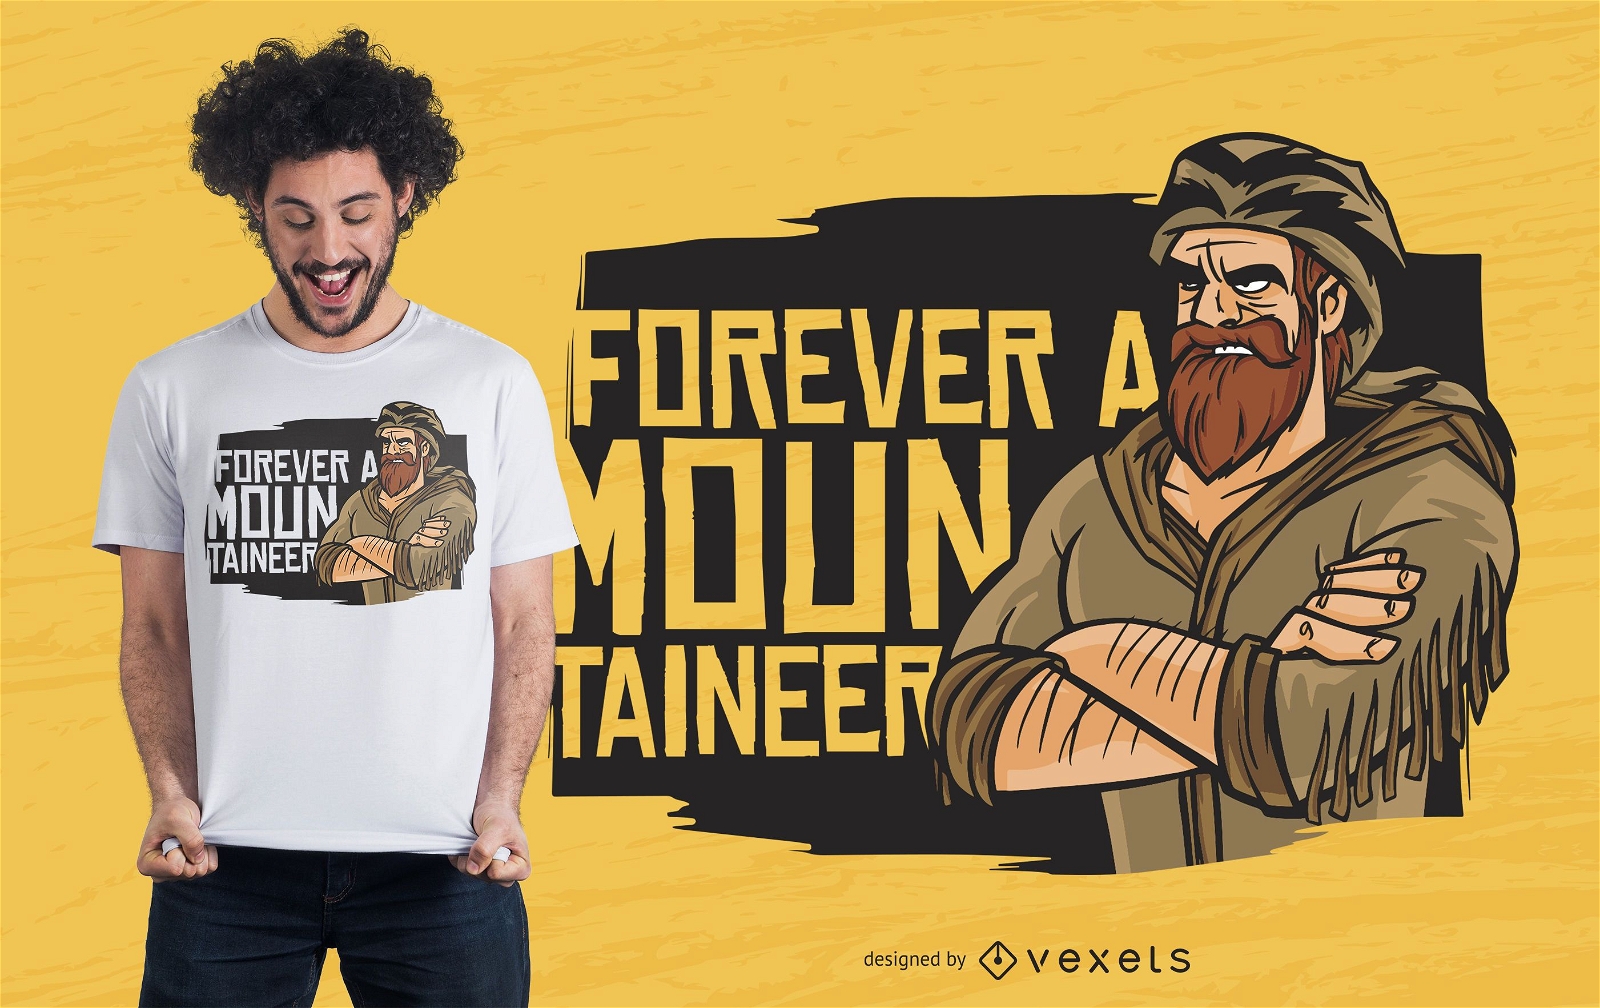 Forever a mountaineer dise?o de camiseta